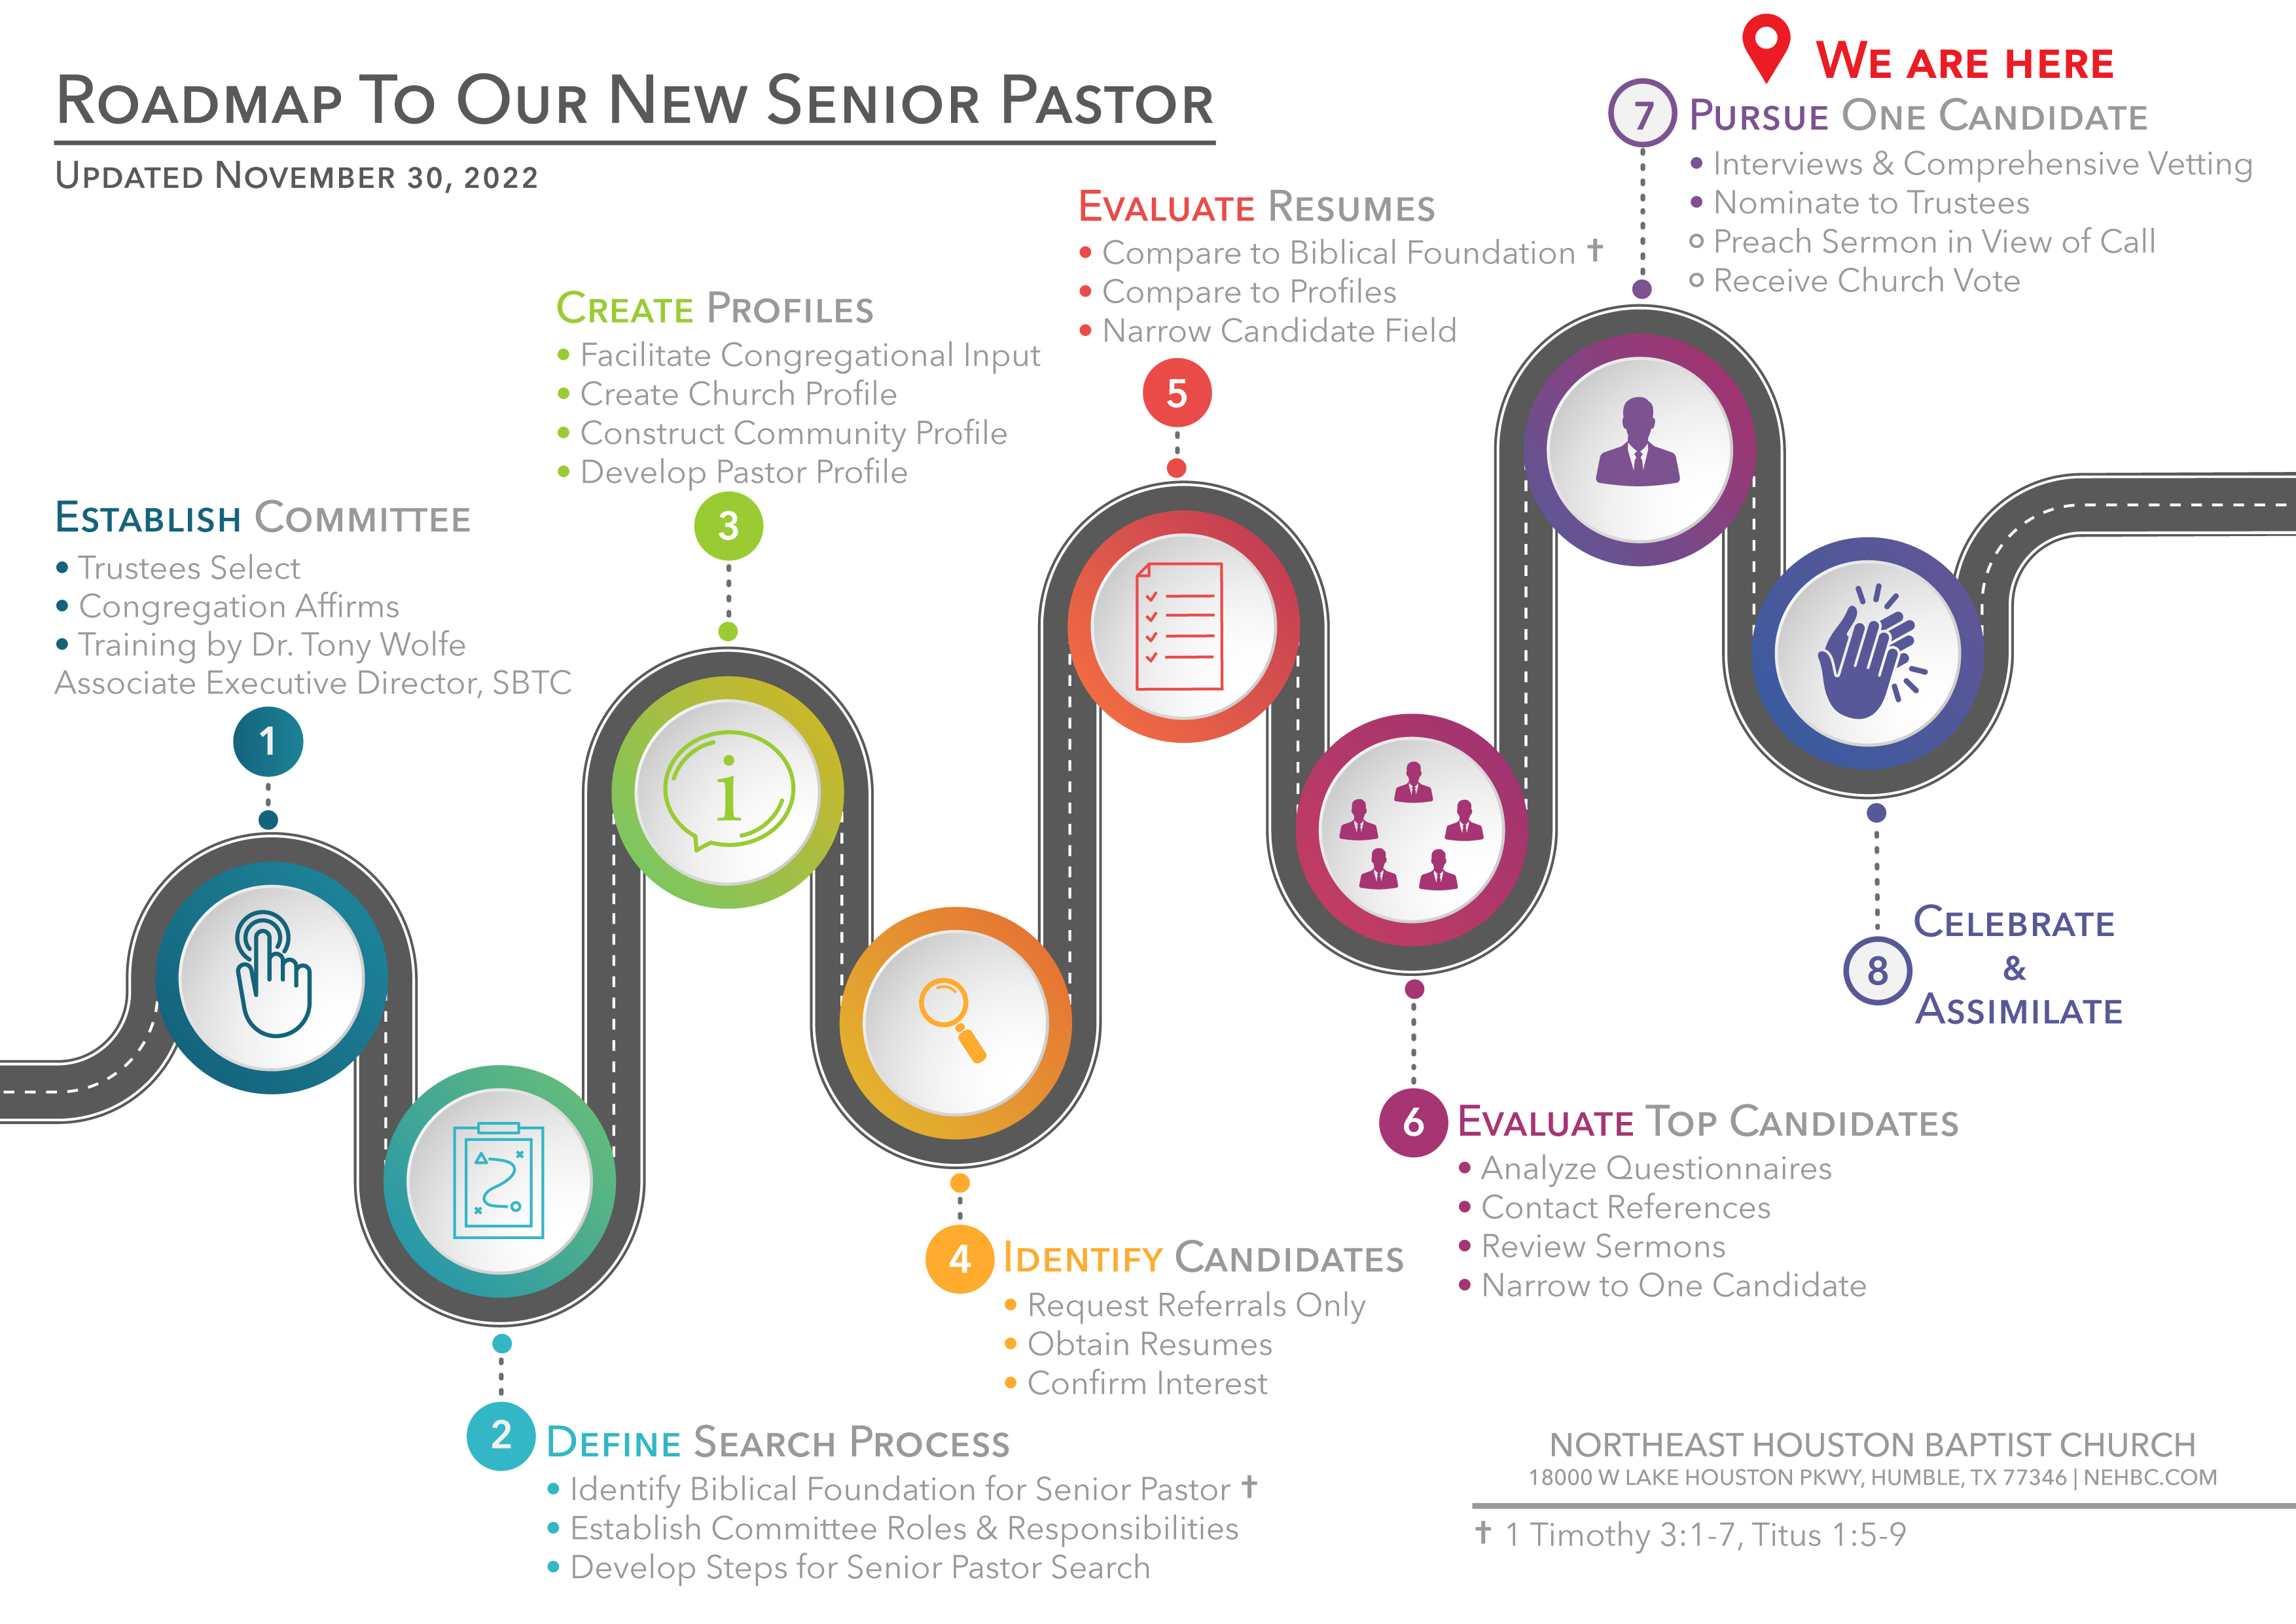 Roadmap_to_Our_New_Senior_Pastor-01.jpg